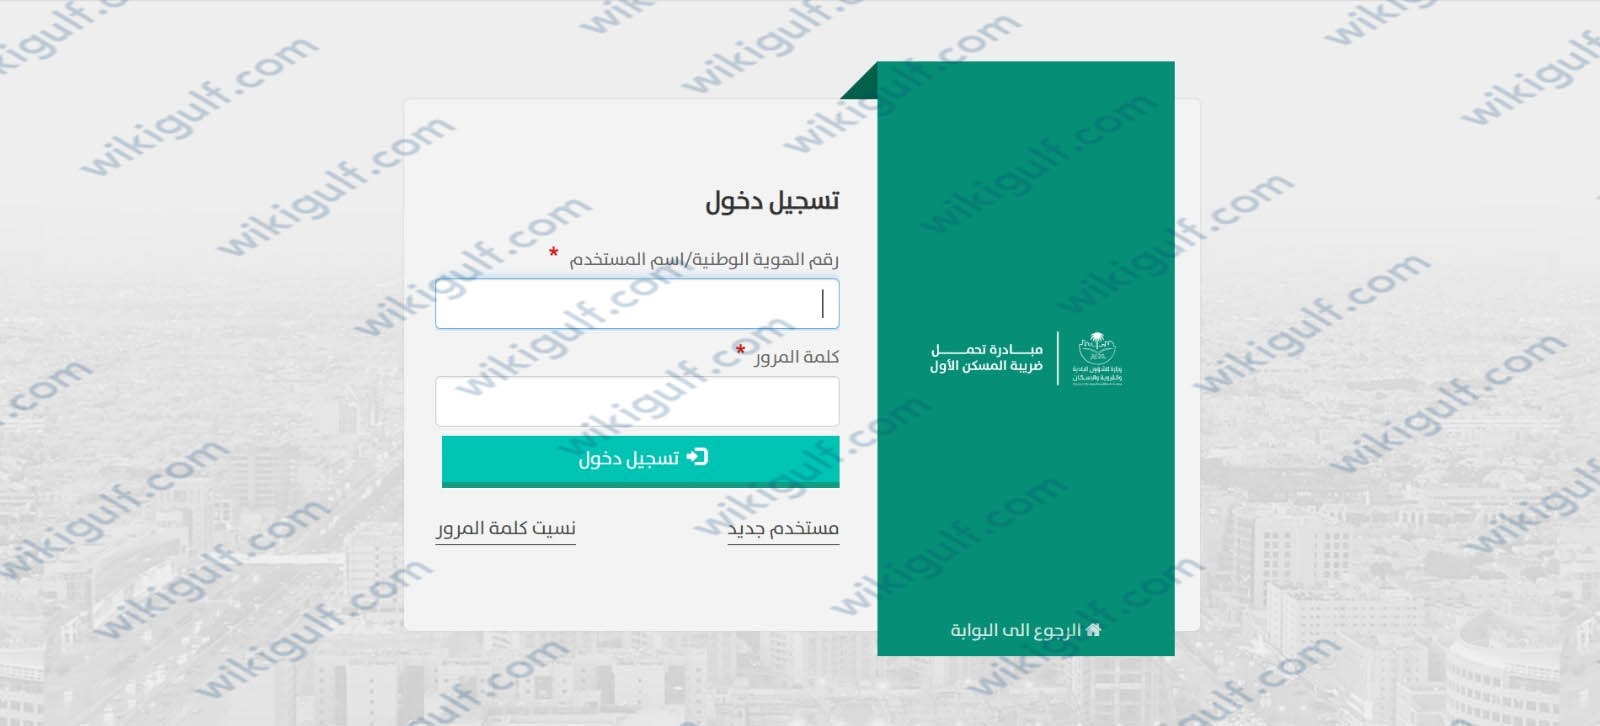 خطوات استخراج شهادة ضريبة المسكن الاول في السعودية